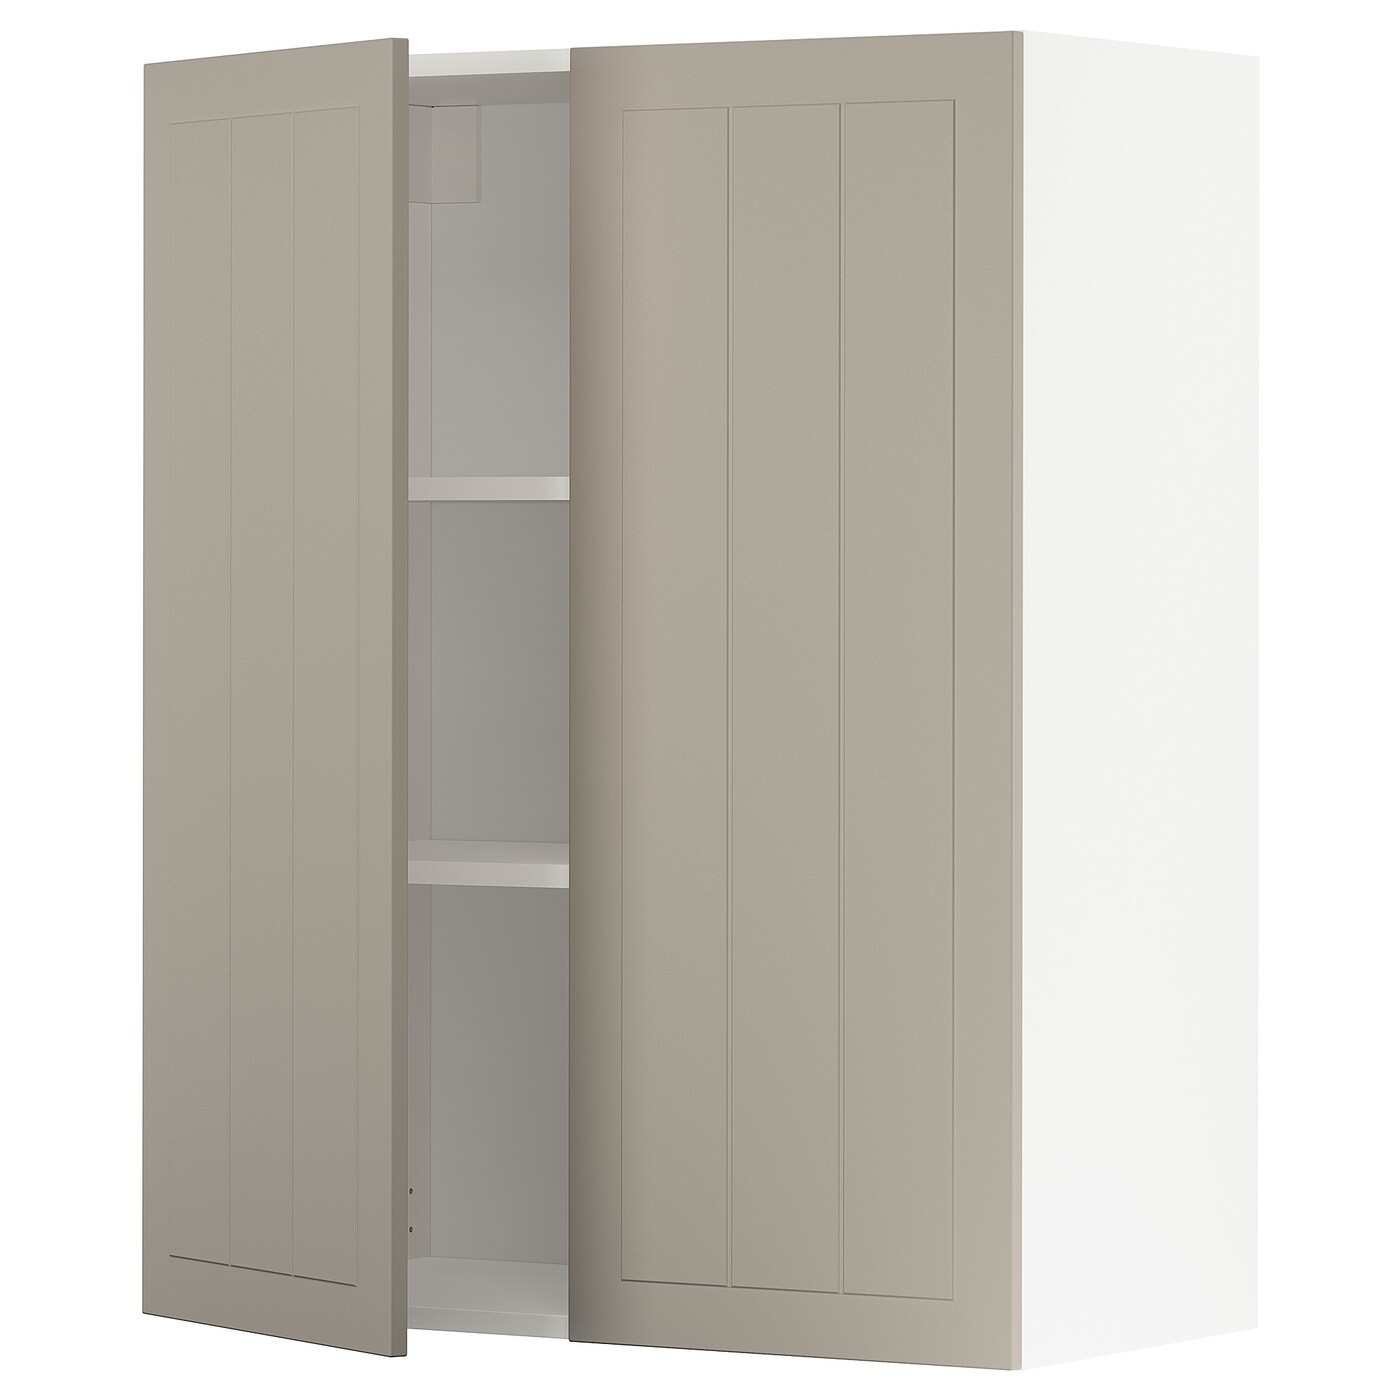 Навесной шкаф с полкой - METOD IKEA/ МЕТОД ИКЕА, 100х80 см, белый/светло-коричневый